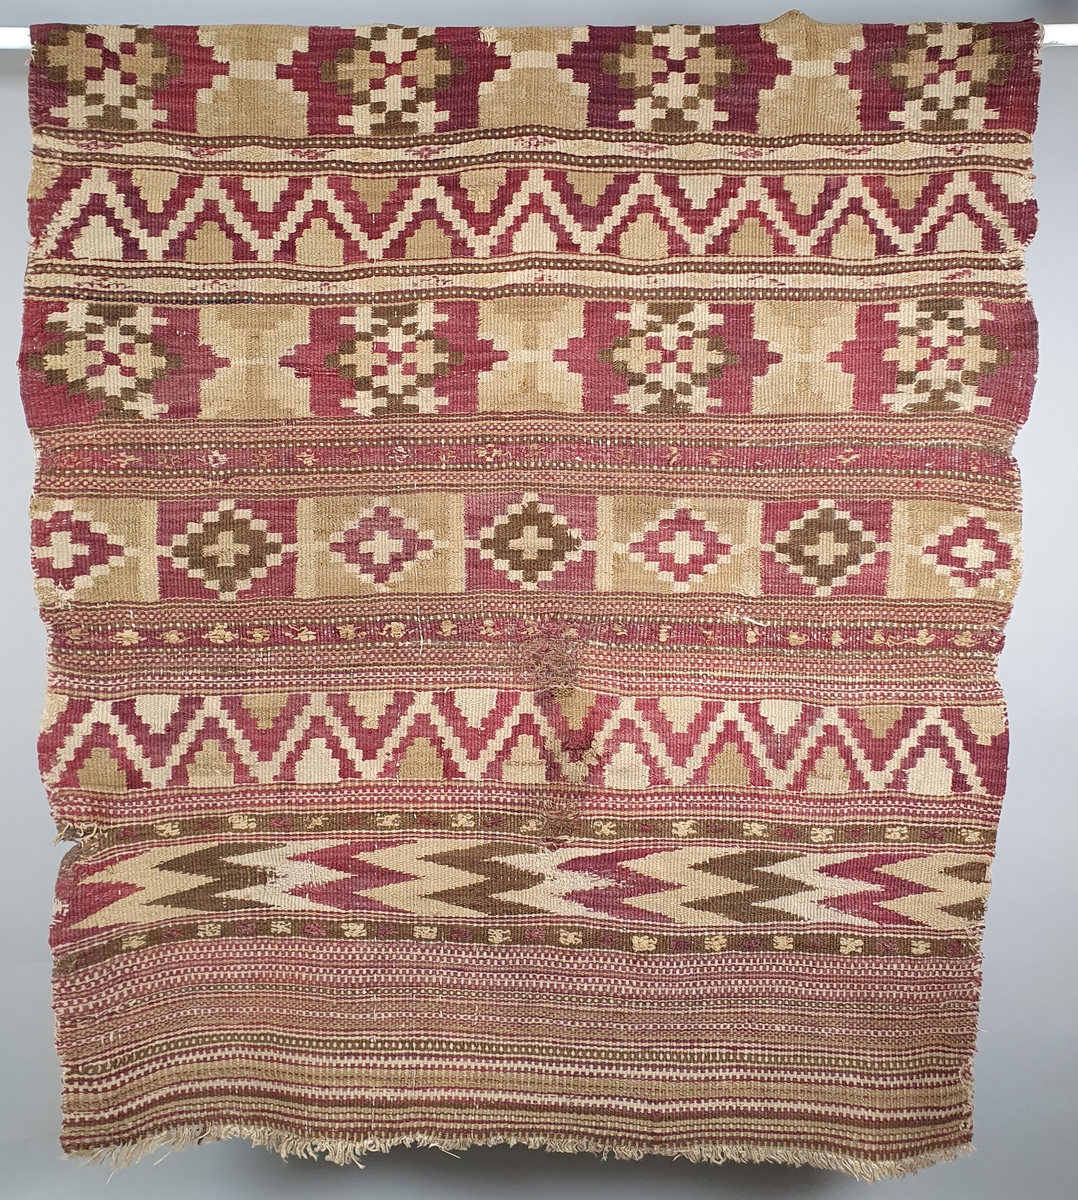 Åkle med ulike geometriske mønstre i striper burgunder-rødt, grønt og beige. Renning av lin, innslag av ull.